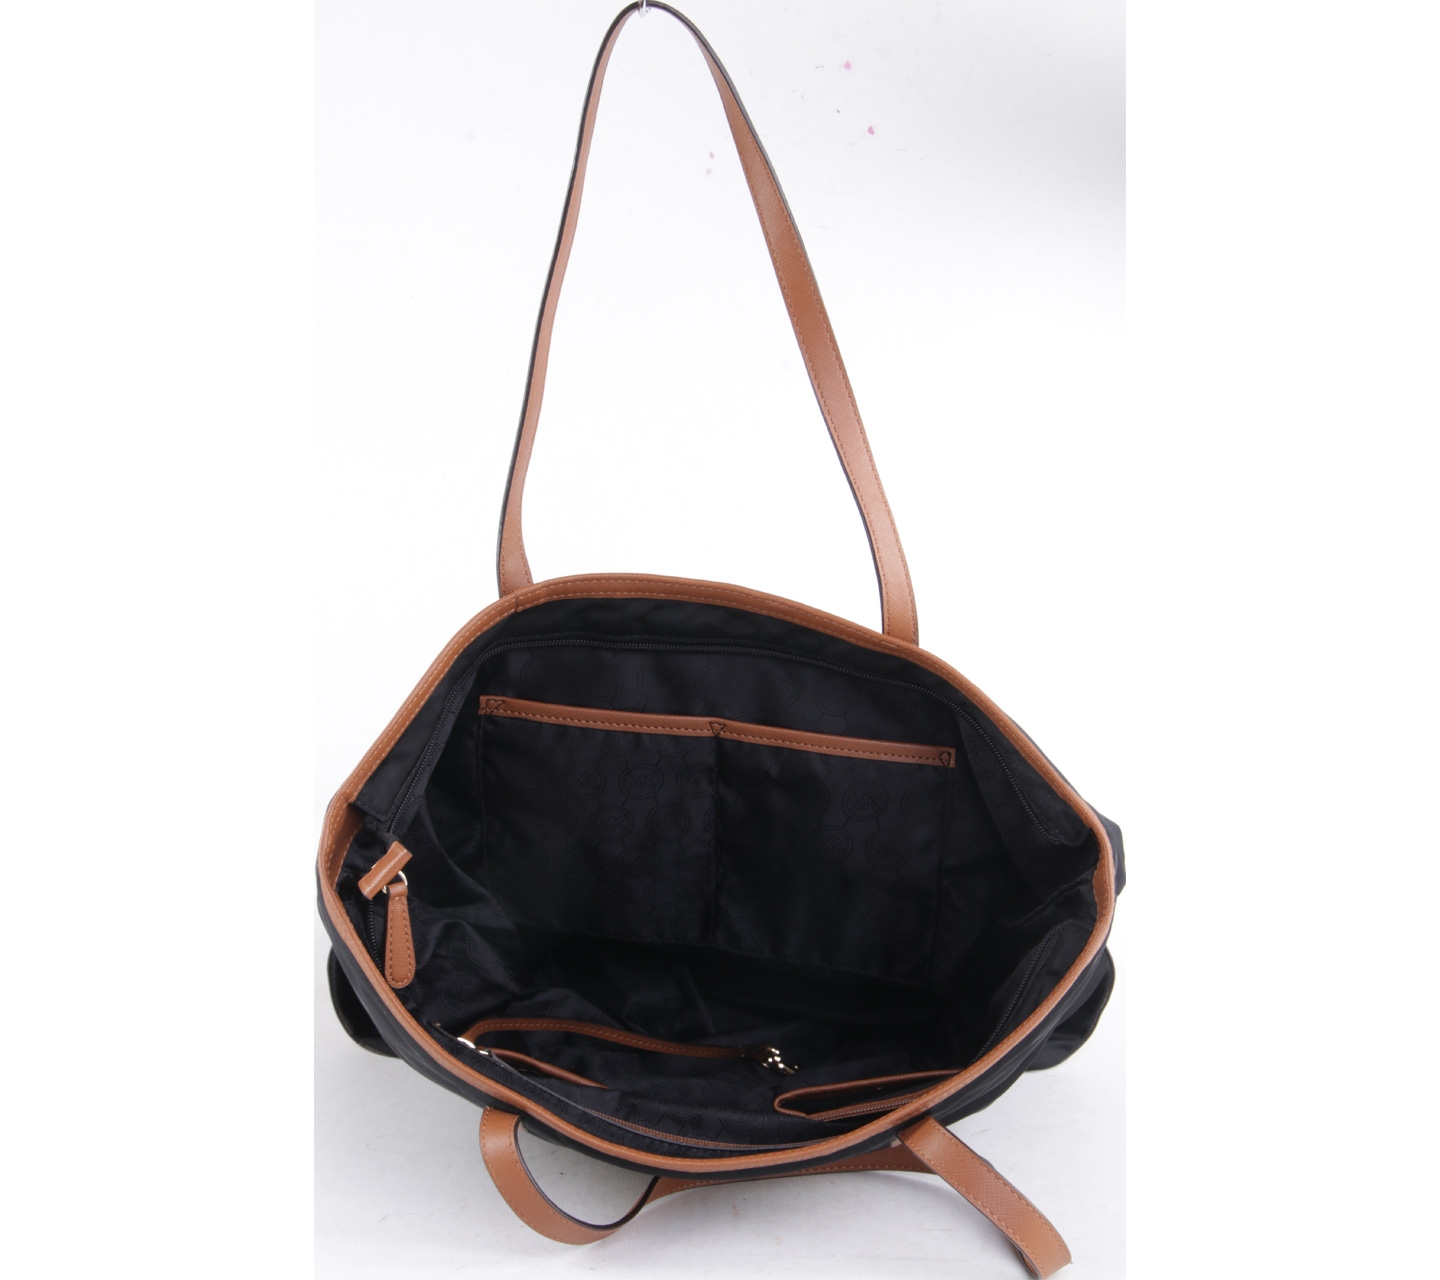 Michael Kors Black & Brown Tote Bag